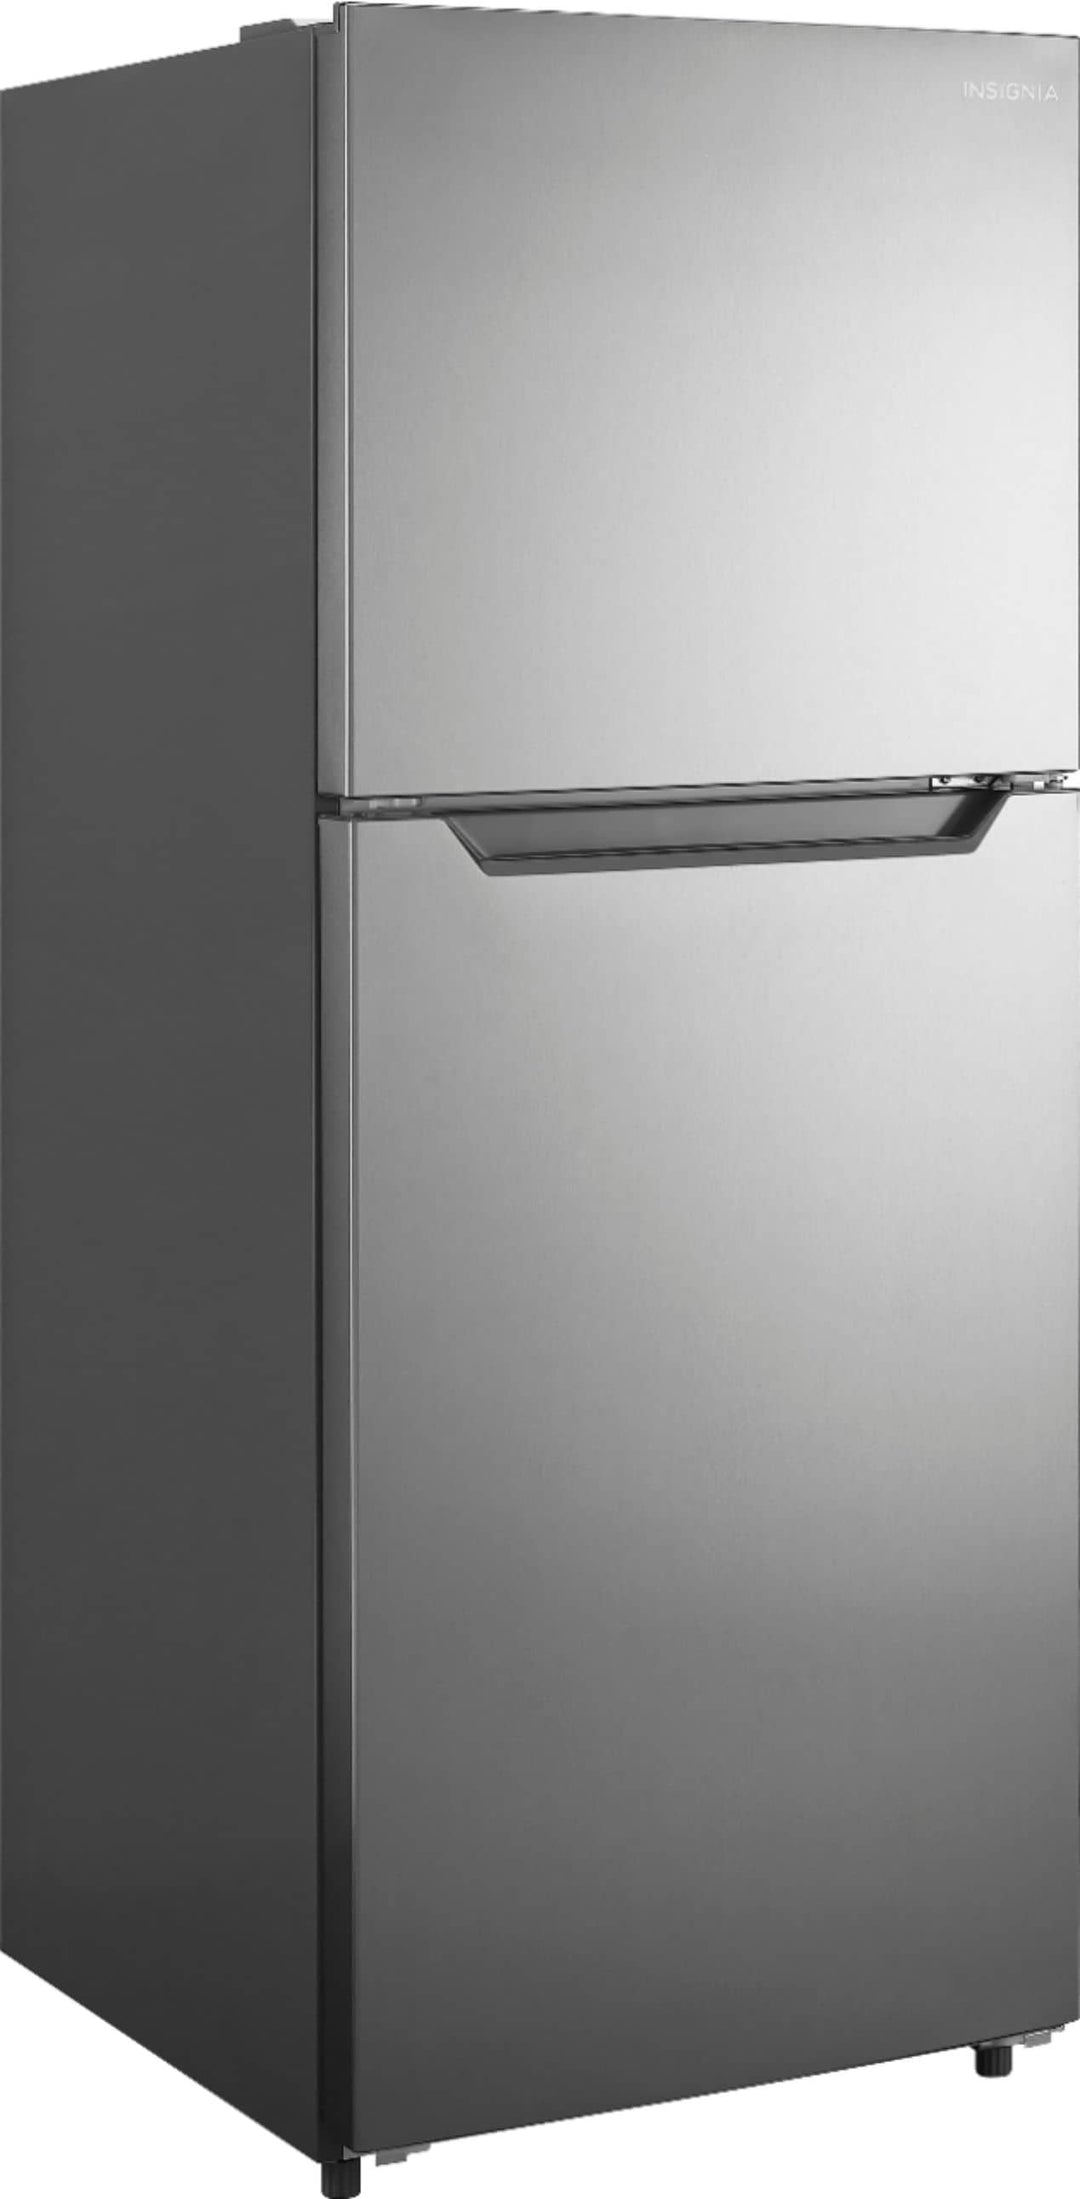 Insignia™ - 10 Cu. Ft. Top-Freezer Refrigerator with Reversible Door - Stainless steel_6